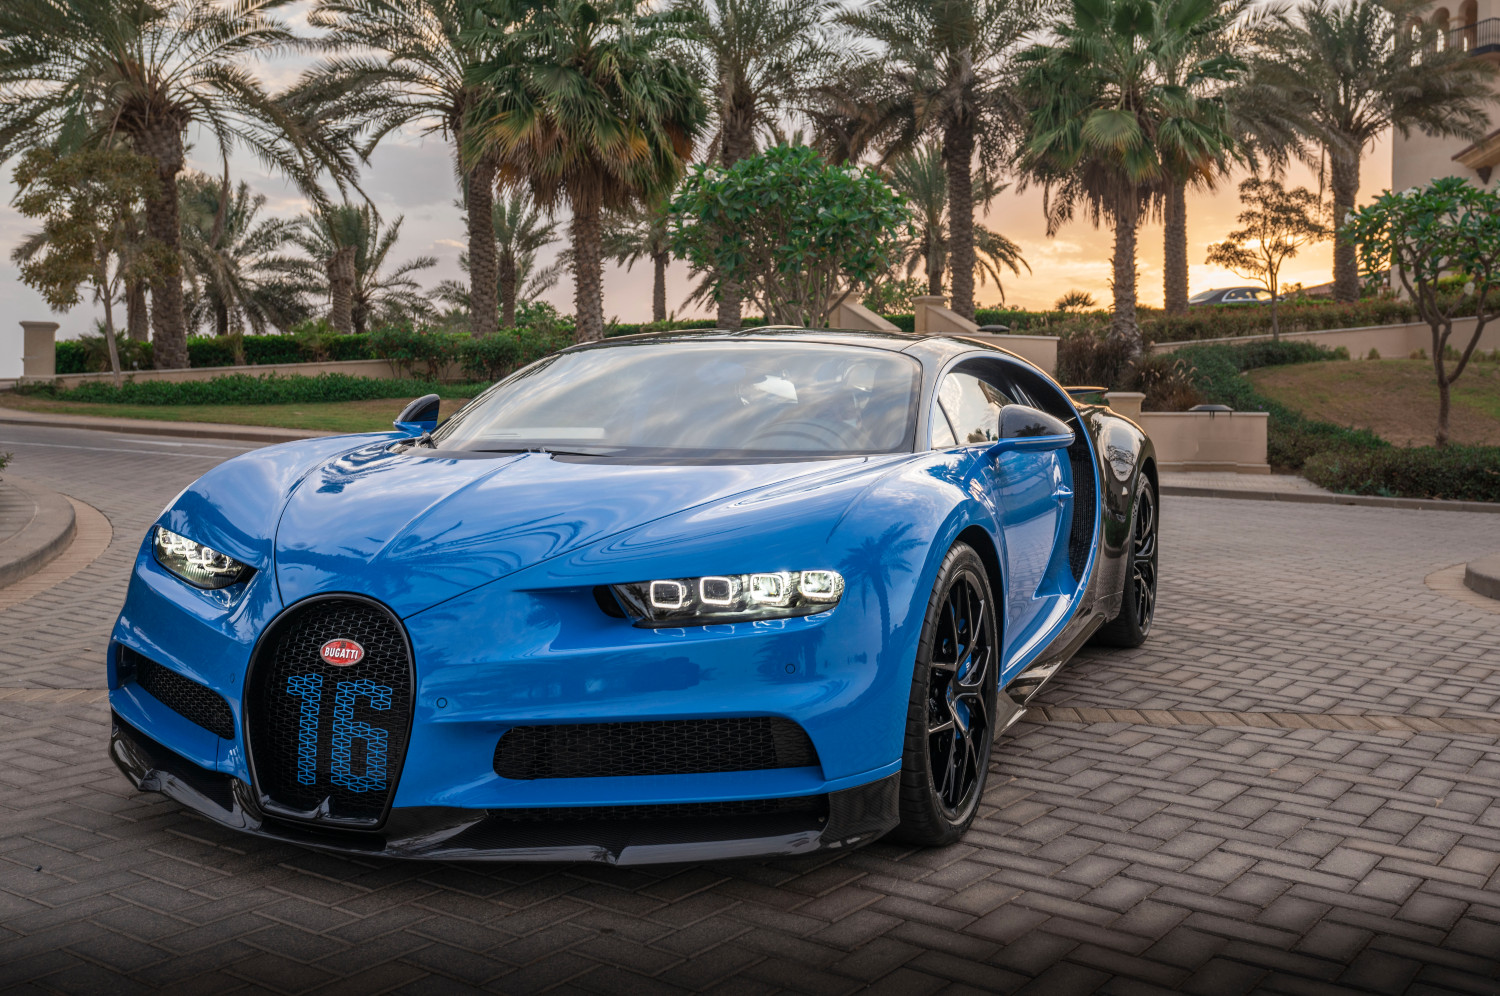 Mate Rimac quer reduzir os custos de produção da Bugatti, mantendo-a hiper-exclusiva